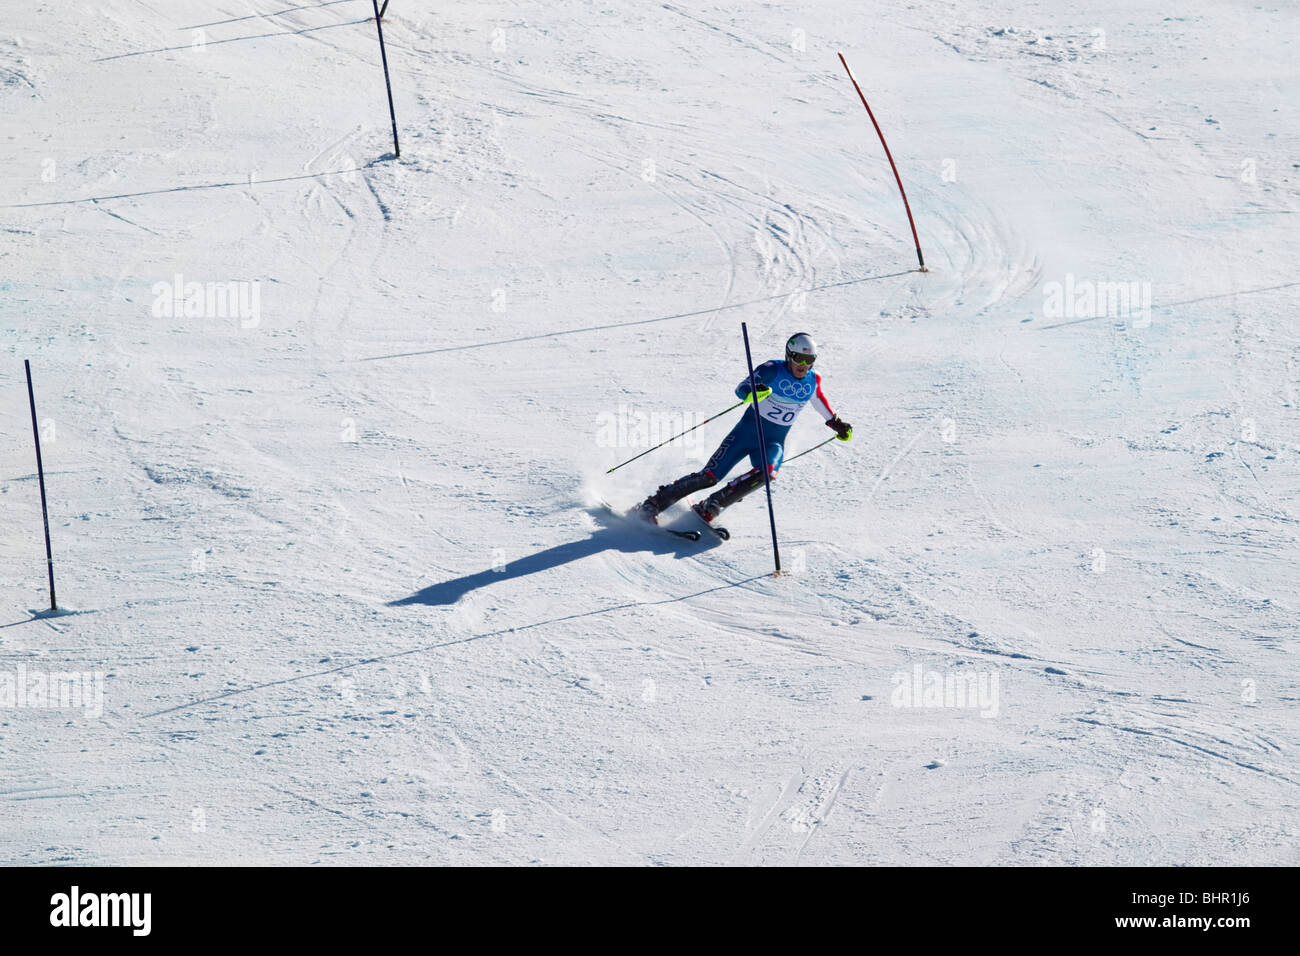 Bode Miller (USA), gagnant de la médaille d'or de la finition de la partie slalom Ski alpin Super combiné hommes lors des Jeux Olympiques Banque D'Images